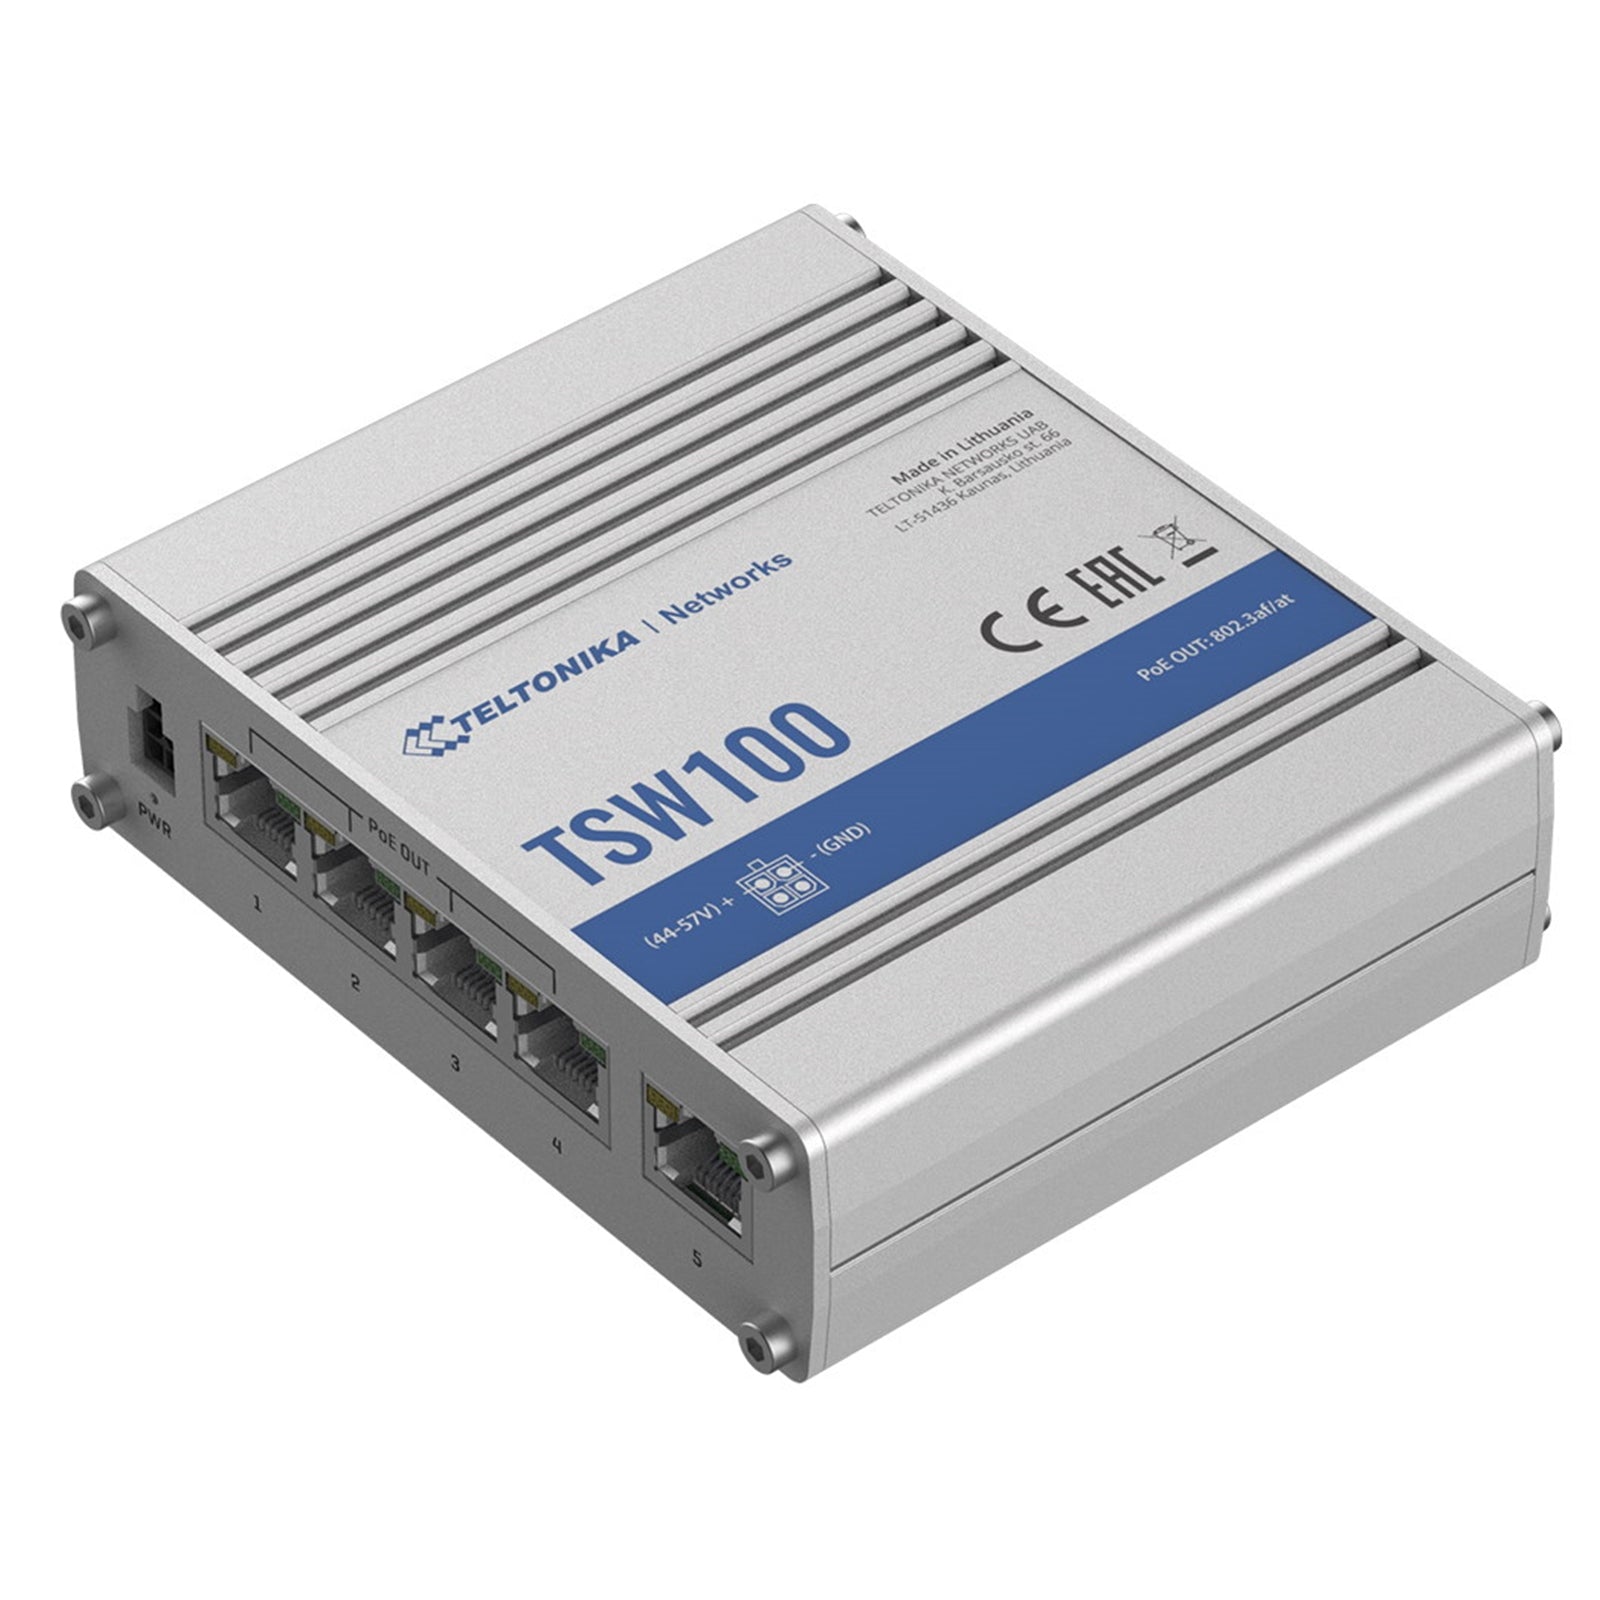 Teltonika TSW100 Gigabit POE+ Industrial Network Switch